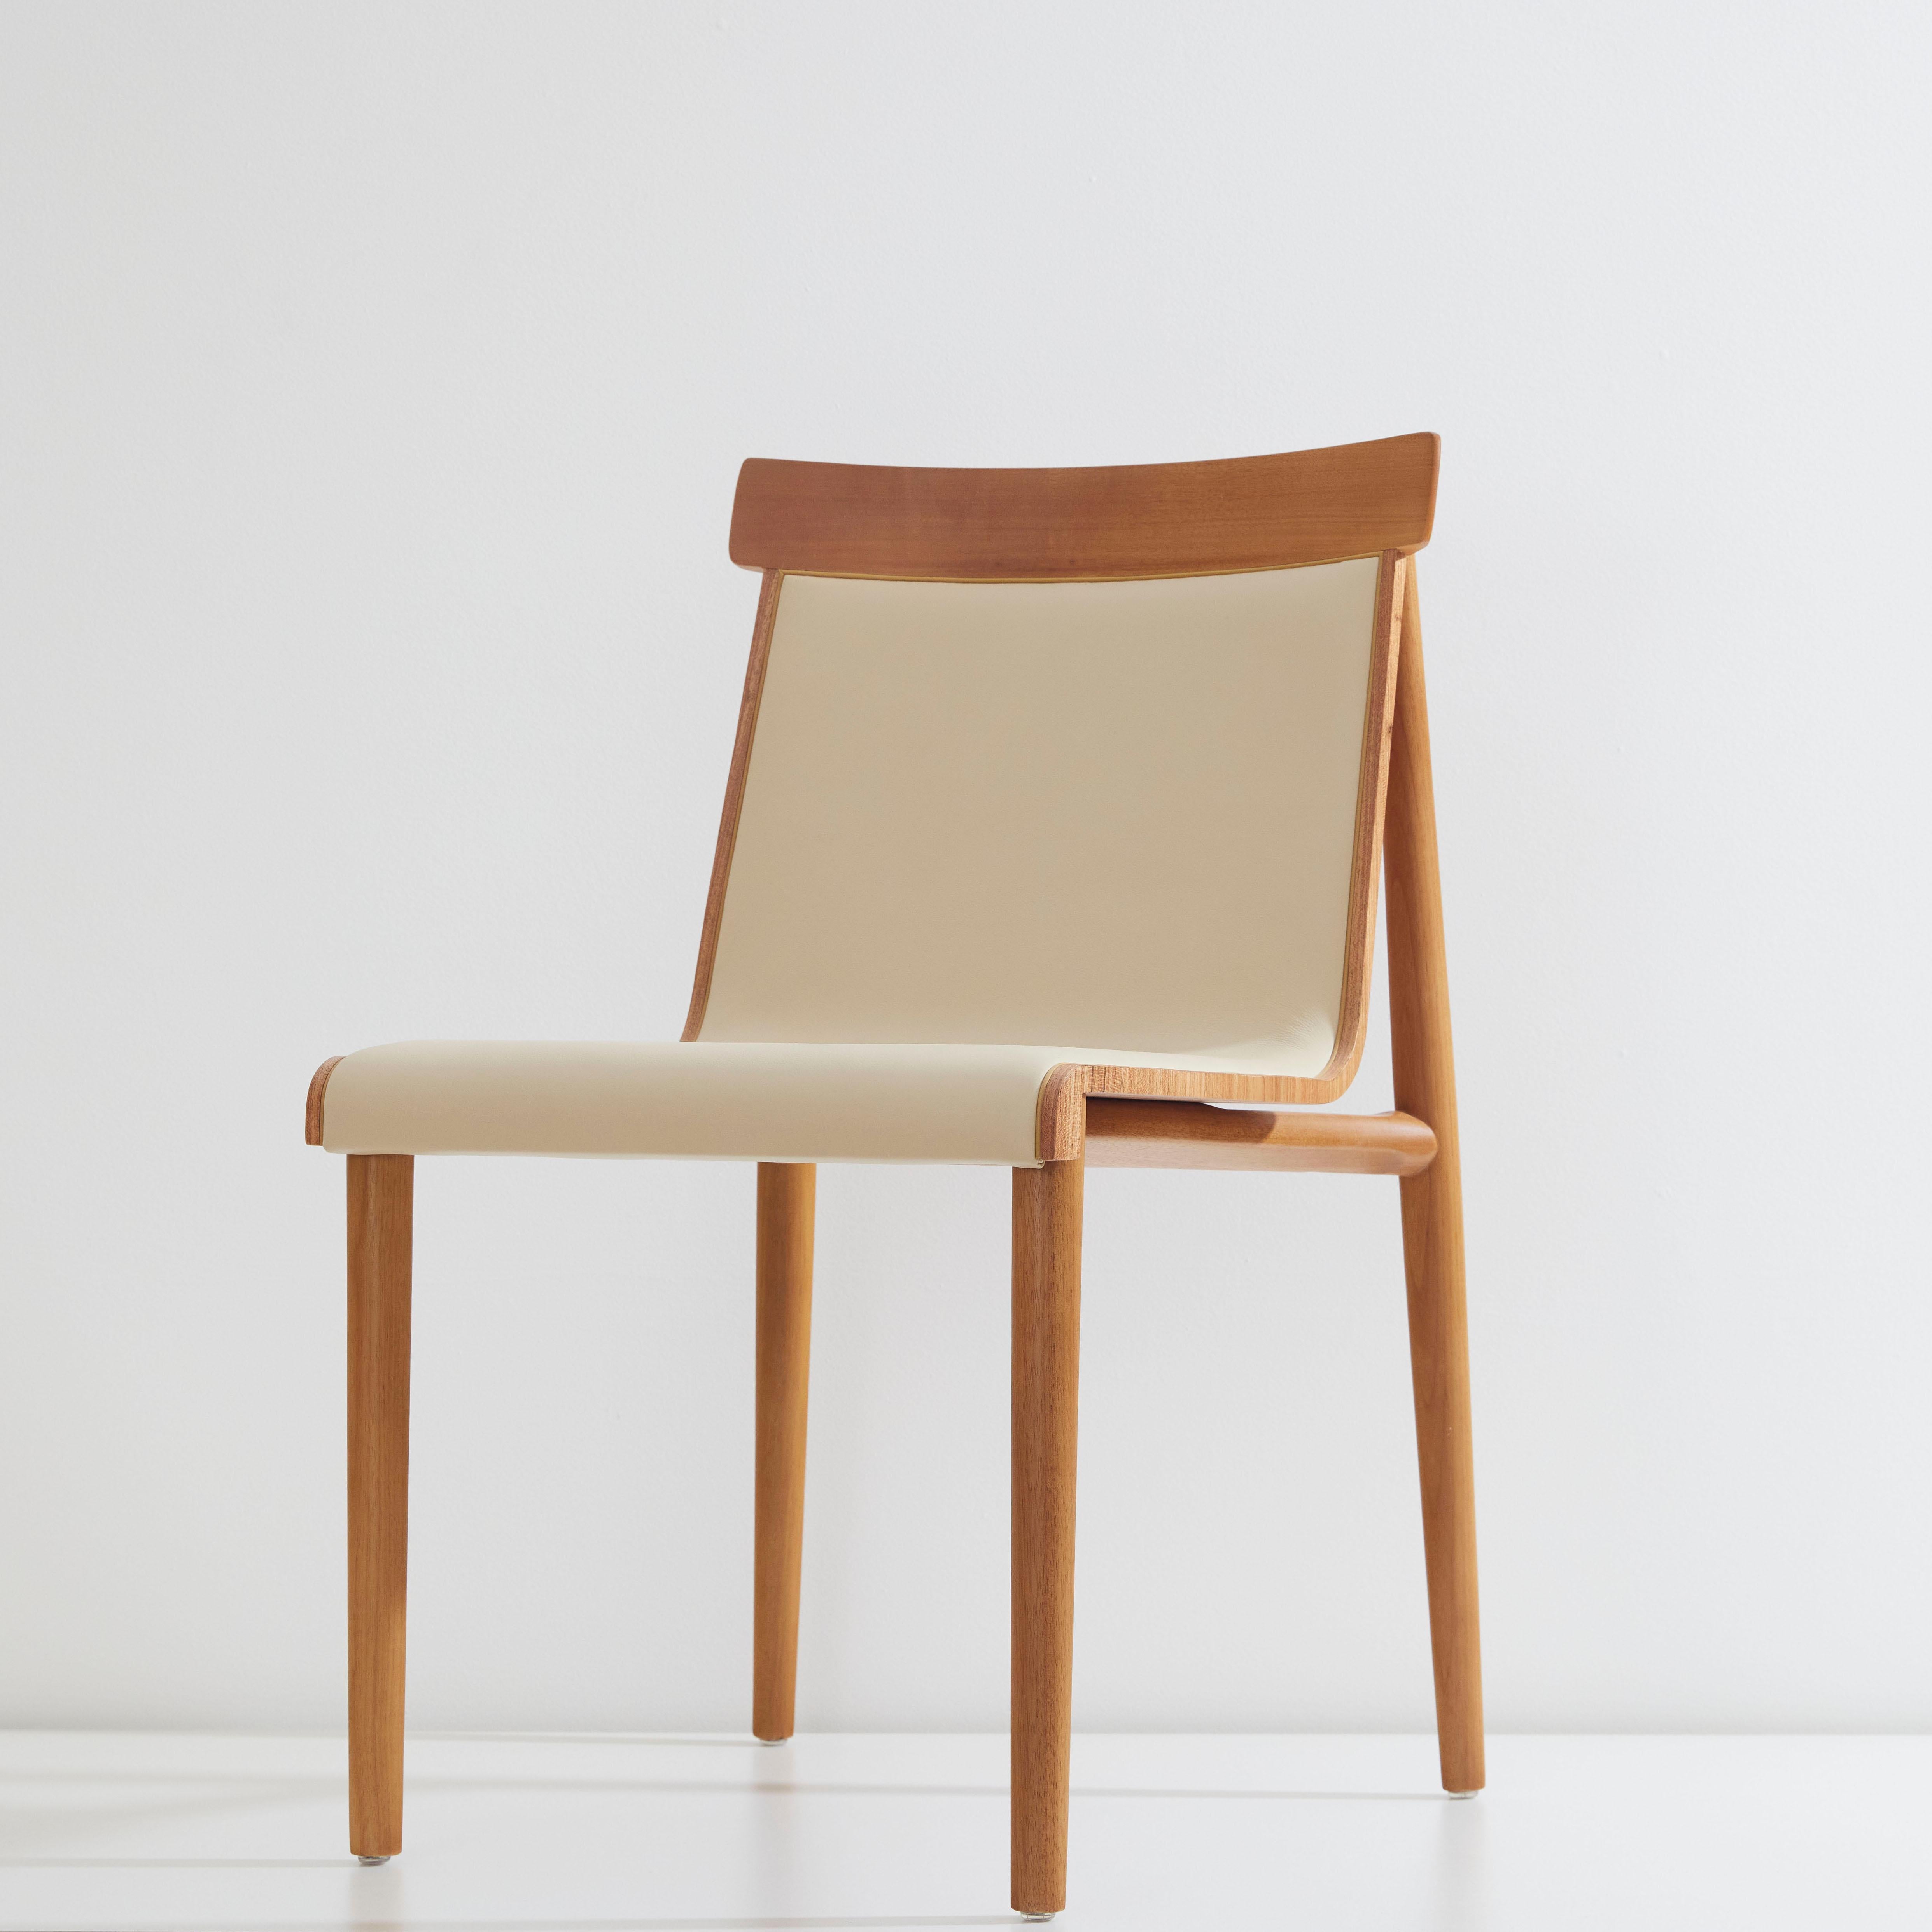 Dry chair collection.

Das Konzept des Dry Stuhls besteht darin, eine Mischung aus verschiedenen Referenzen zu schaffen, die zu einem modernen Klassiker führen, der zwischen Retro und Moderne tanzt. Die Struktur wird mit schwerem und tiefem Holz